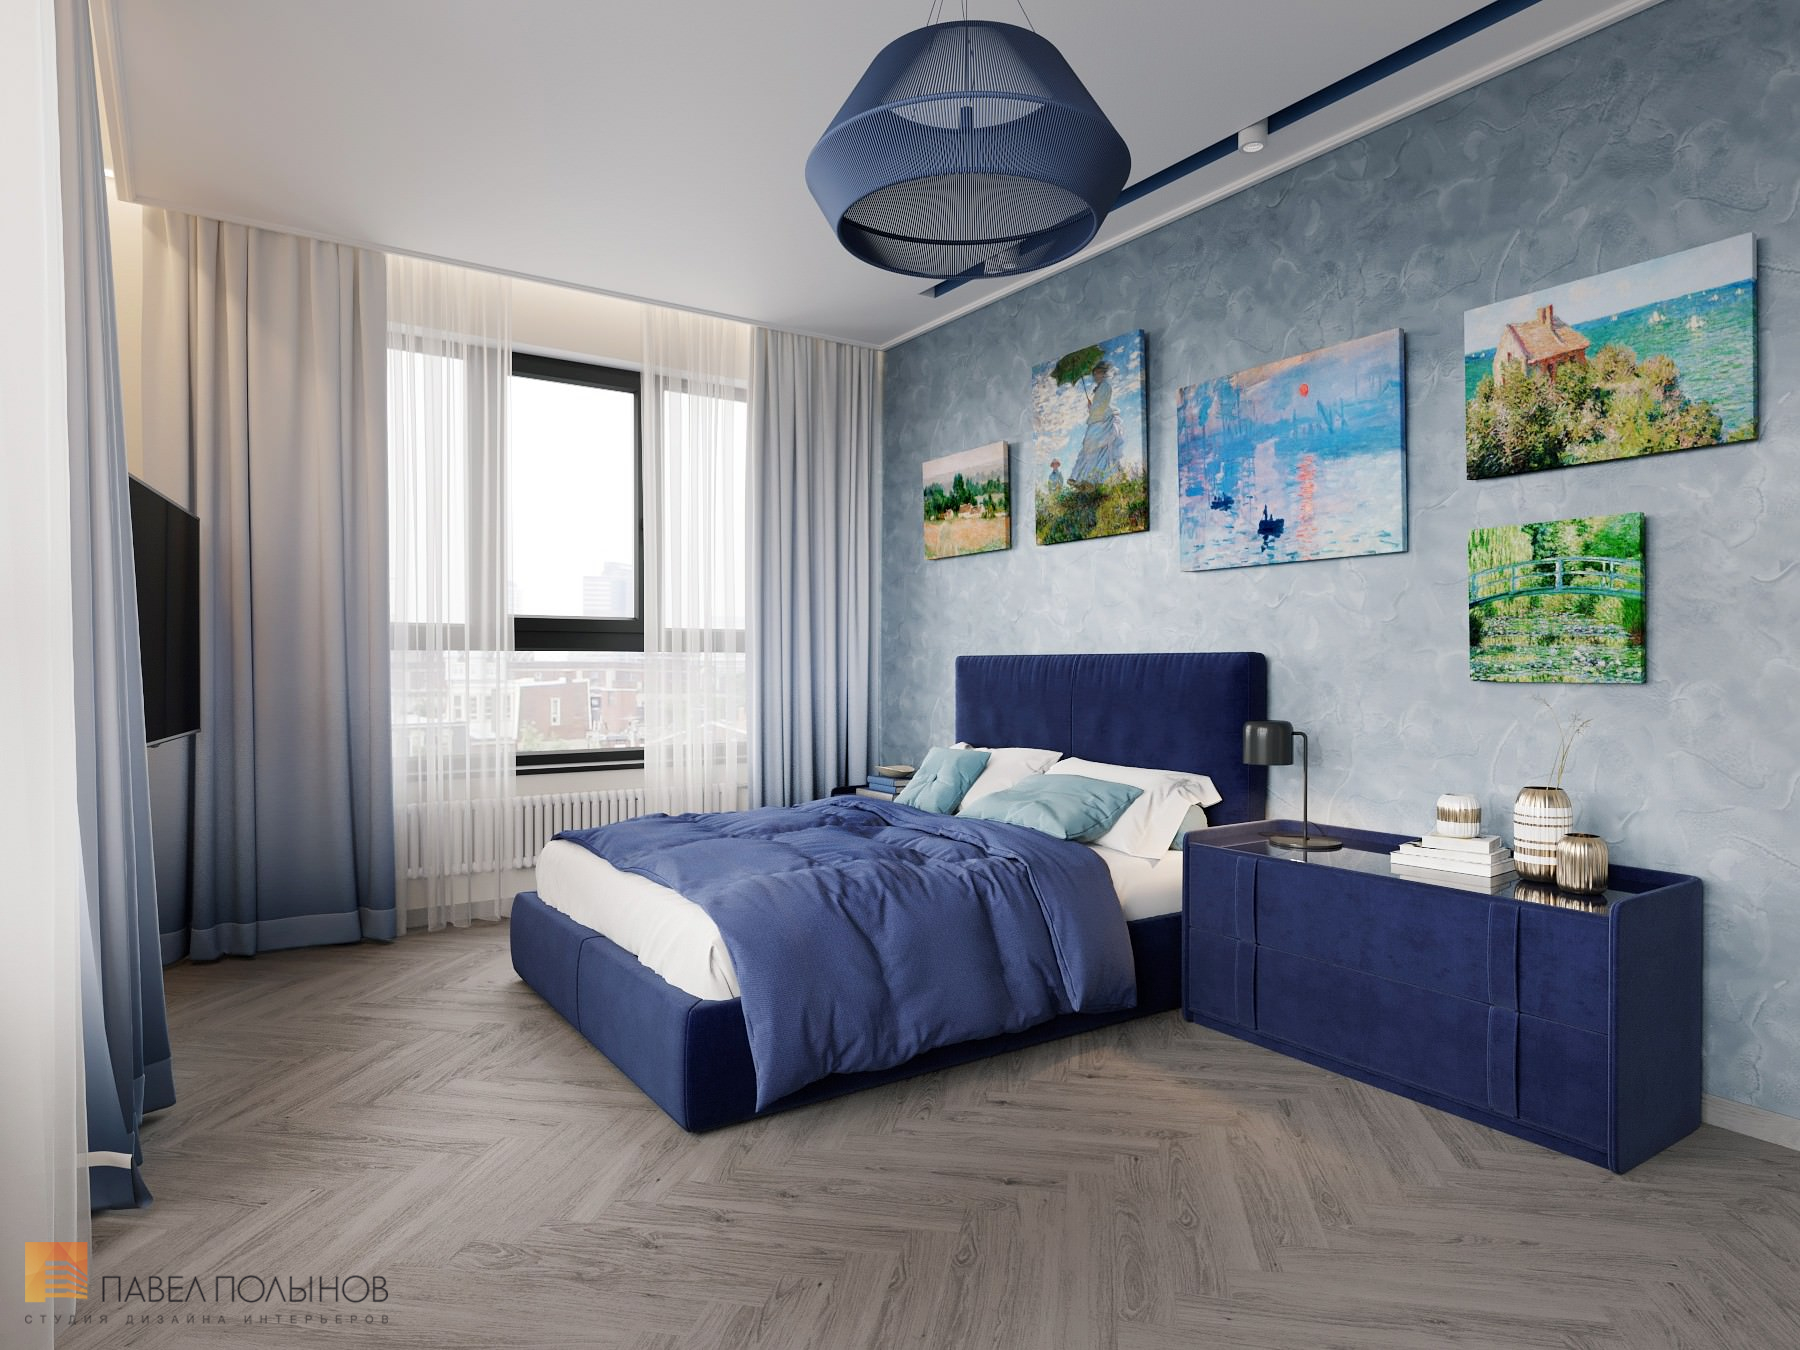 Фото дизайн интерьера спальни из проекта «Интерьер квартиры в скандинавском стиле, ЖК «Silver», 146 кв.м.»